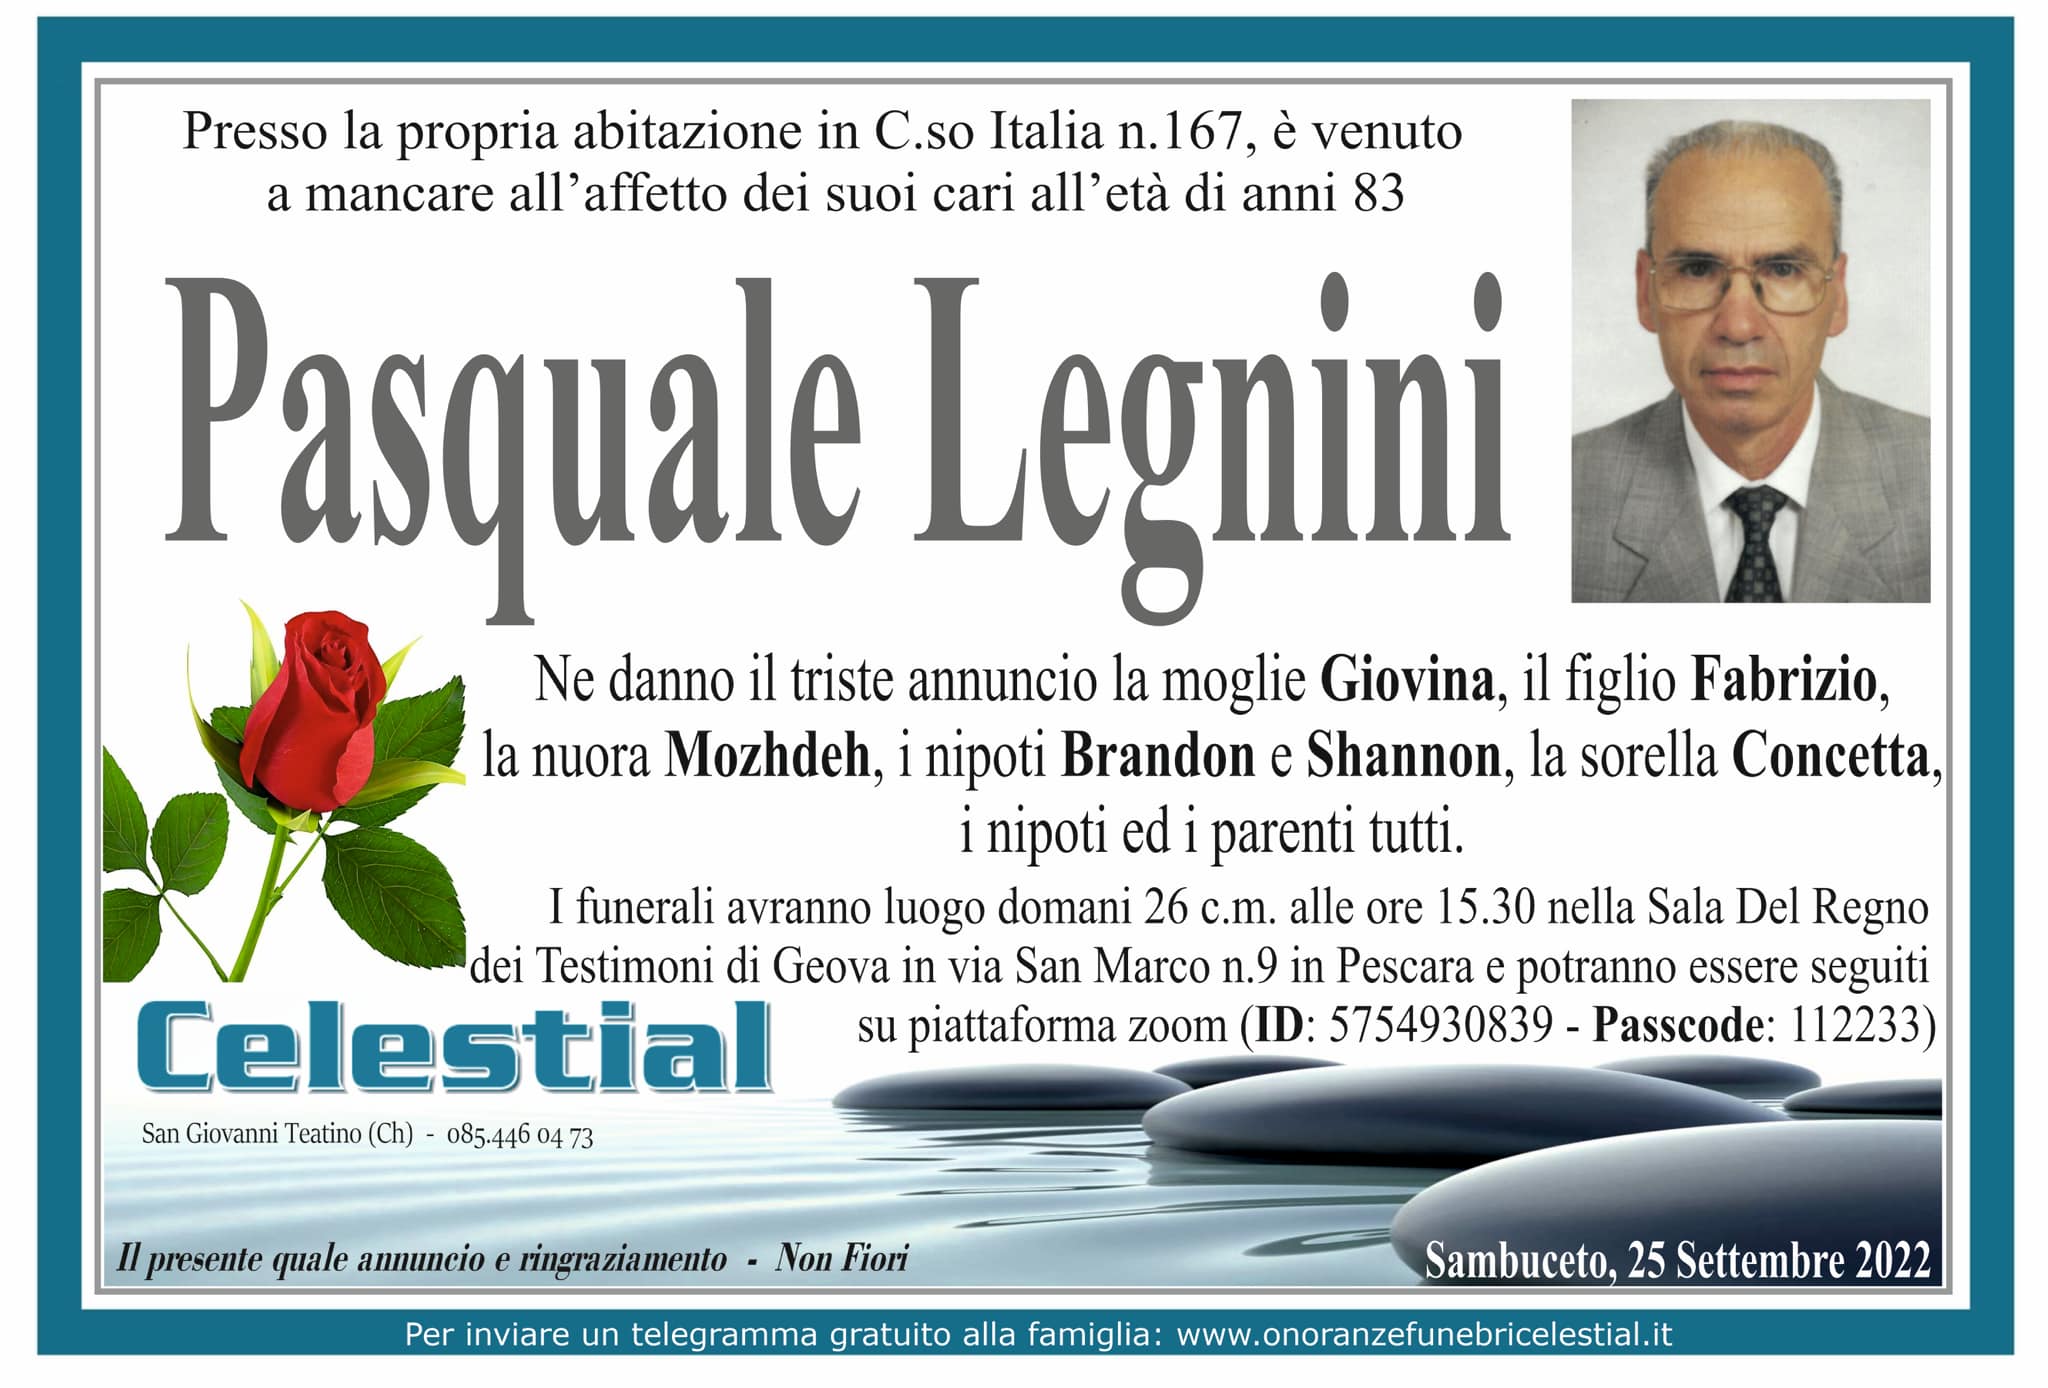 Pasquale Legnini